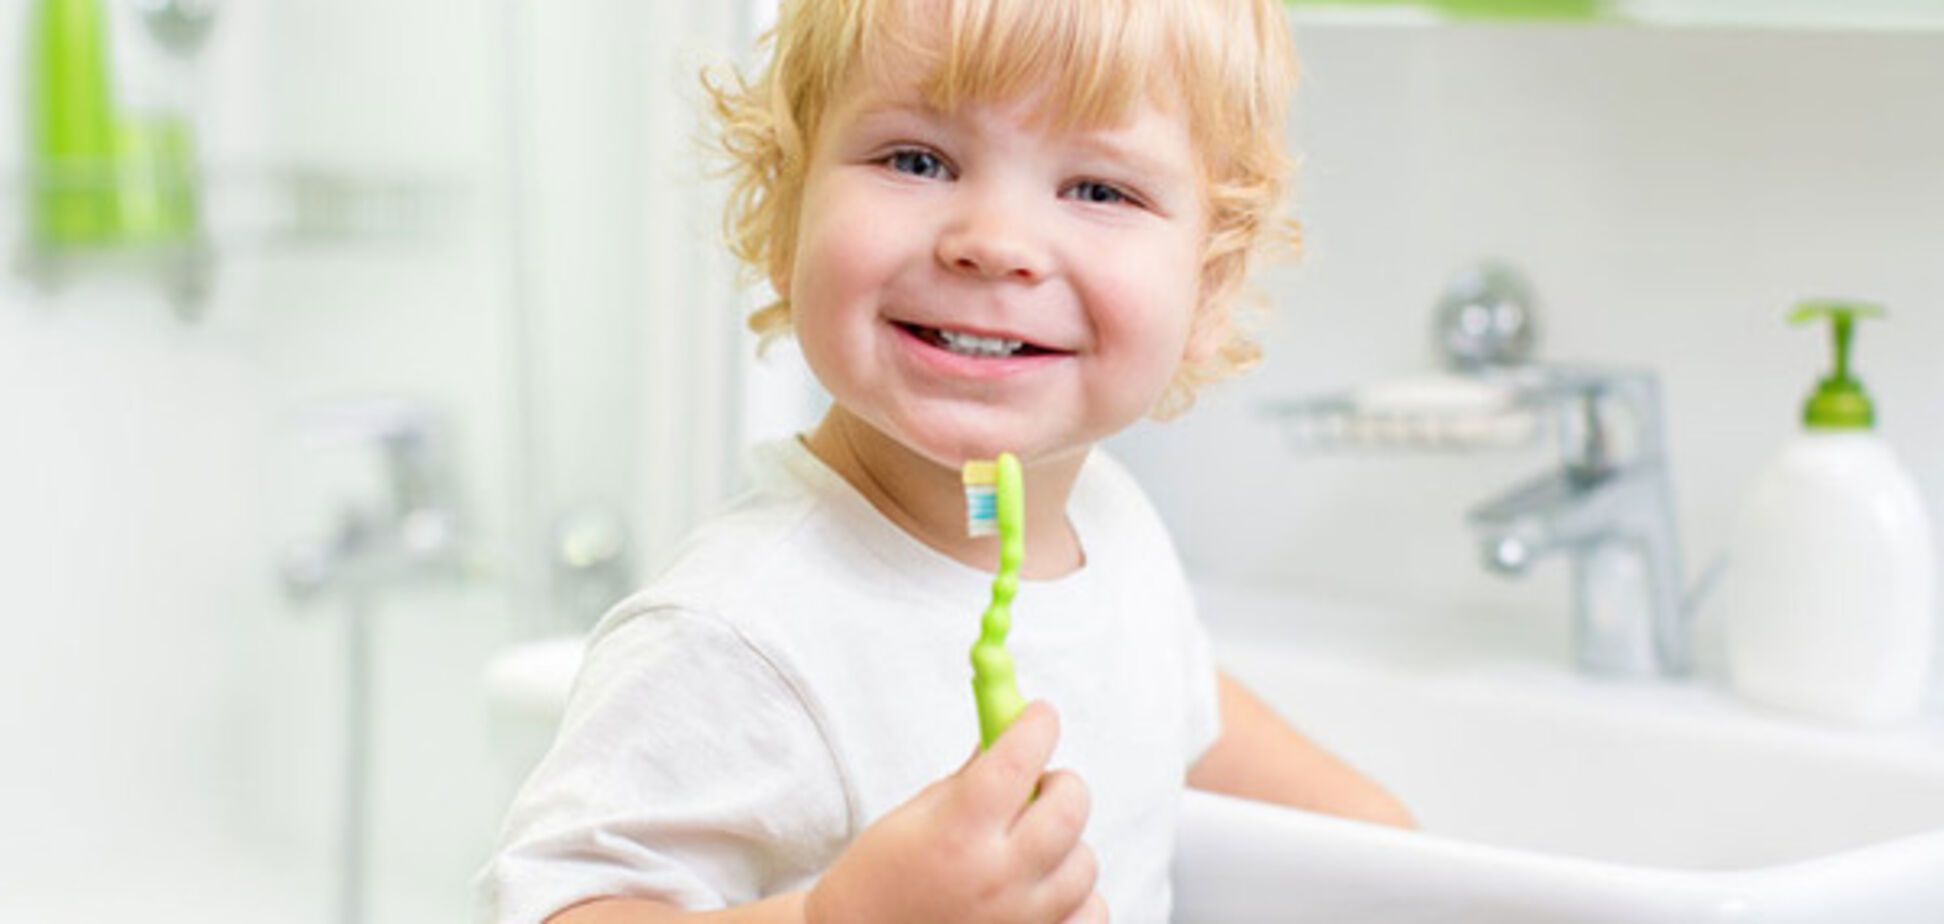 Воспитываем чистюлю: как научить ребенка с удовольствием ухаживать за собой 